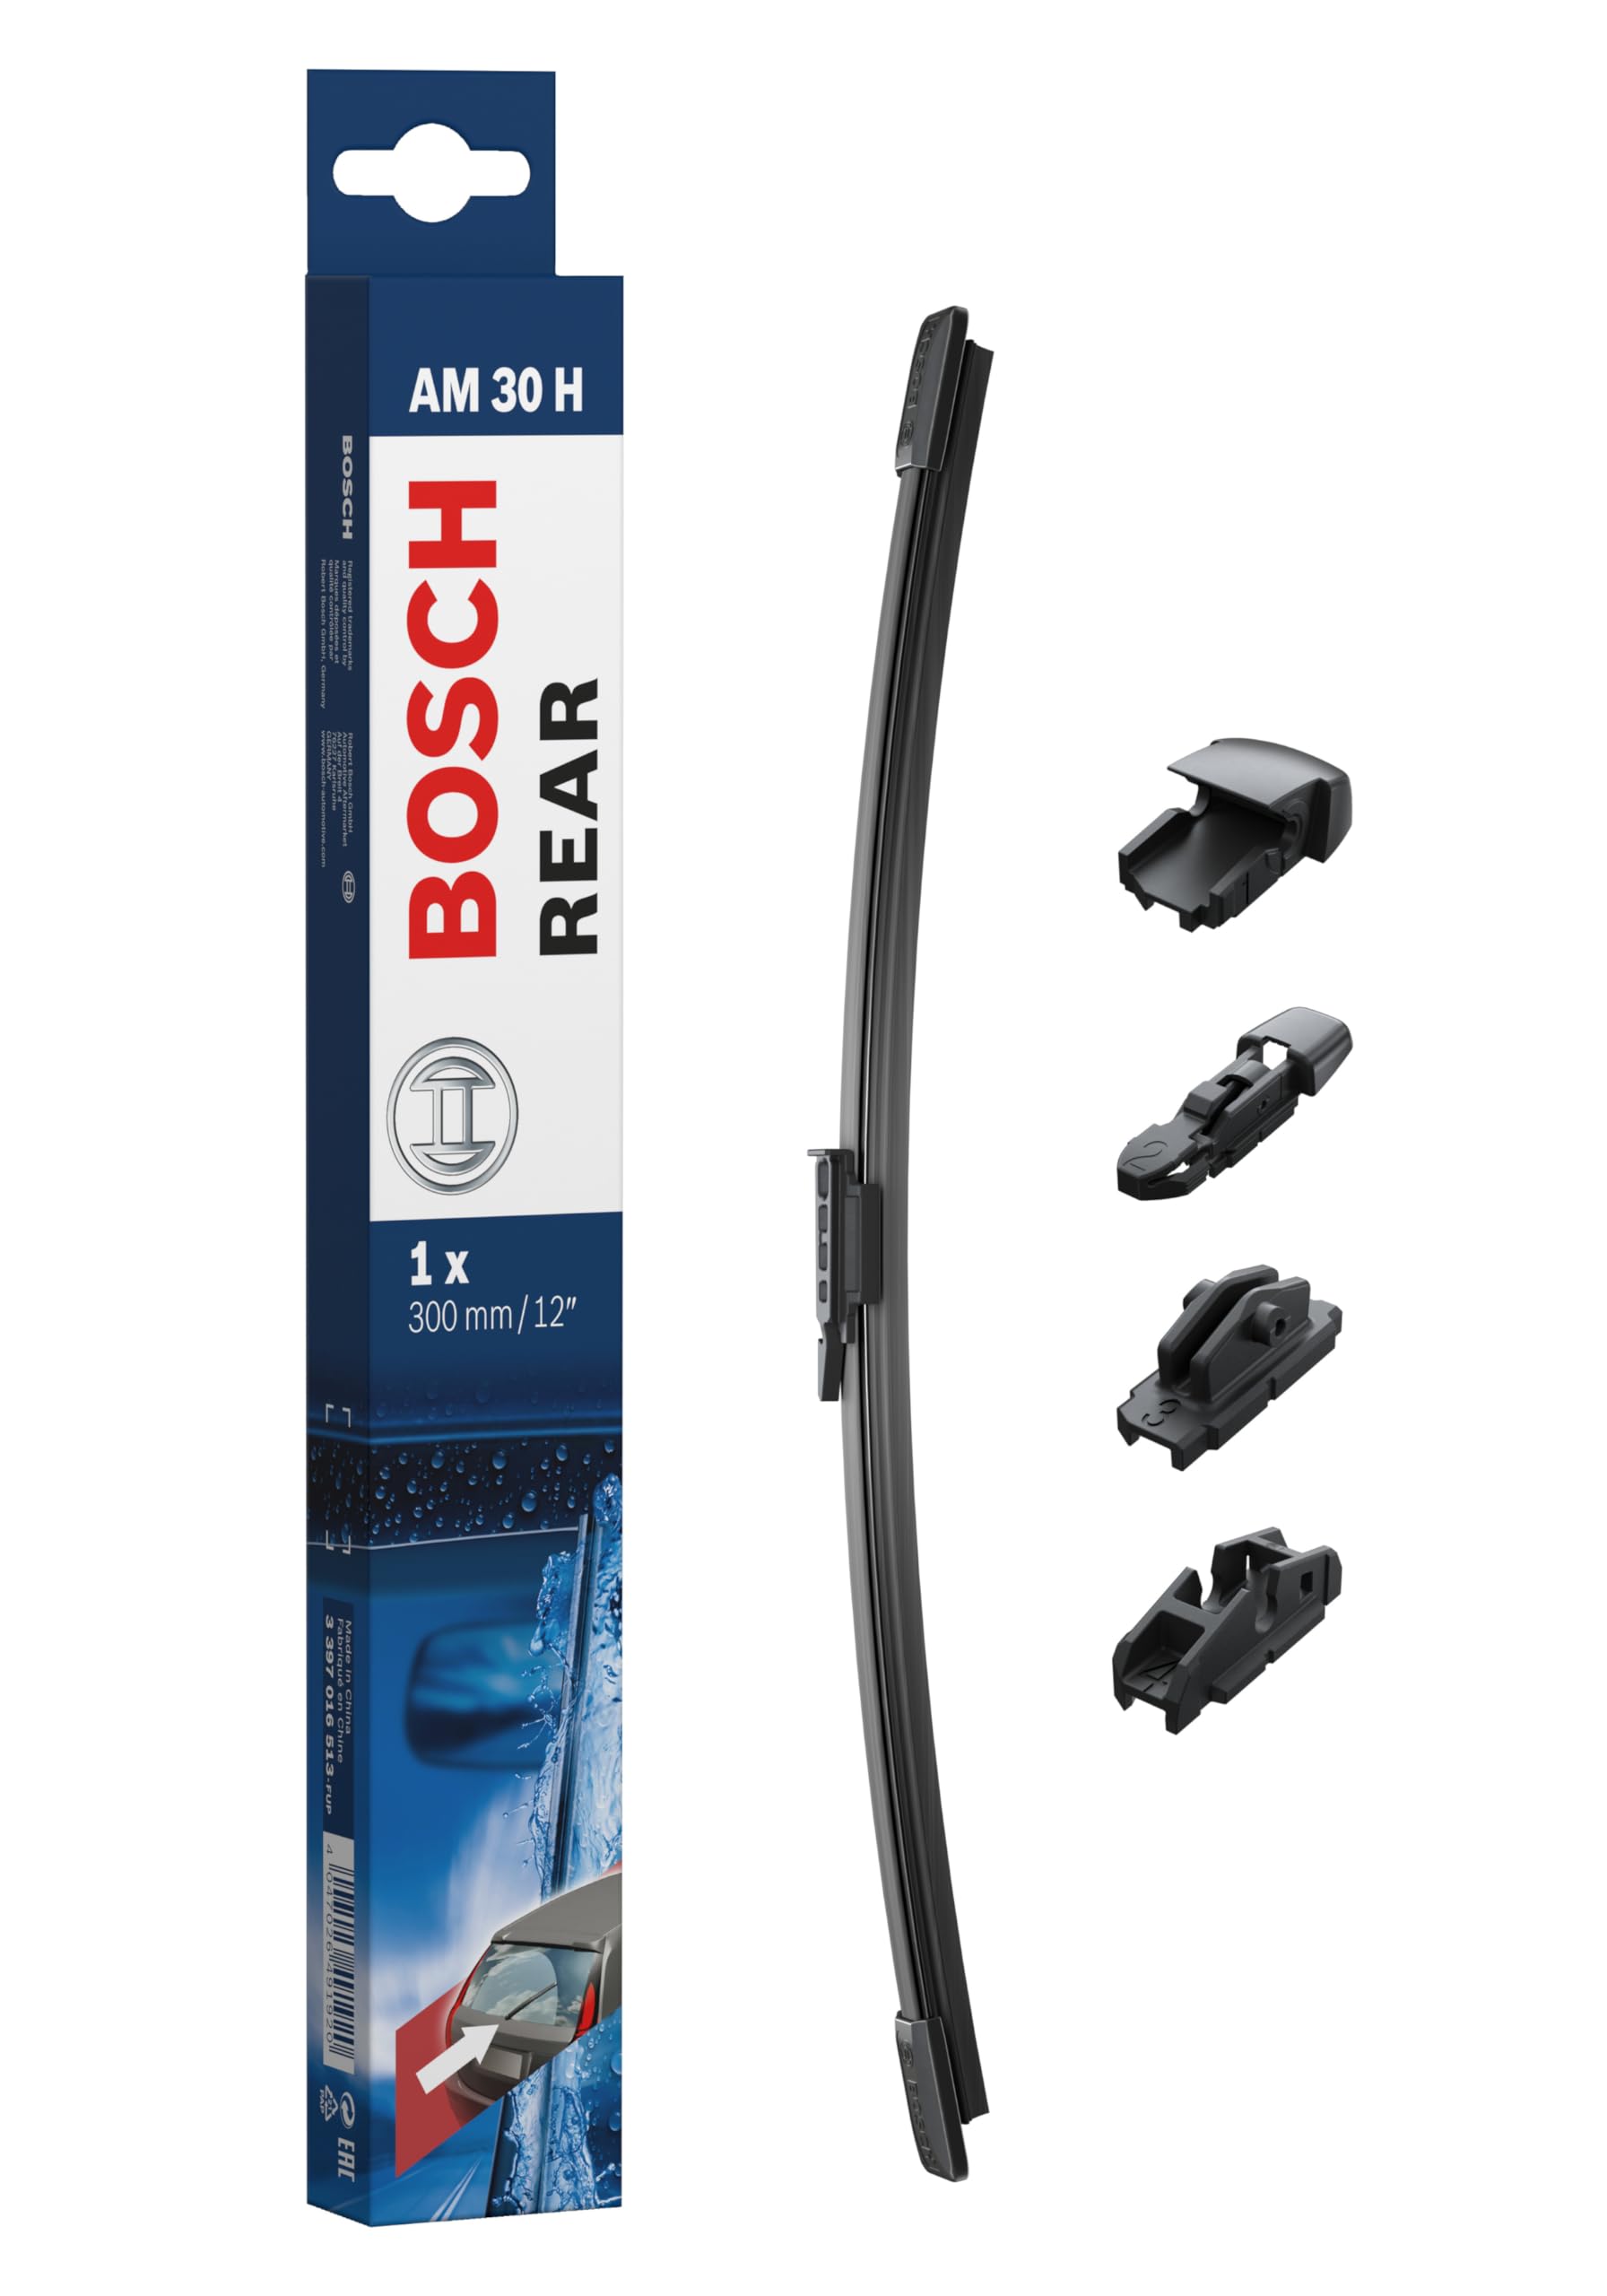 Bosch AM30H - Scheibenwischer Rear - Länge: 300 mm - Scheibenwischer für Heckscheibe von Bosch Automotive